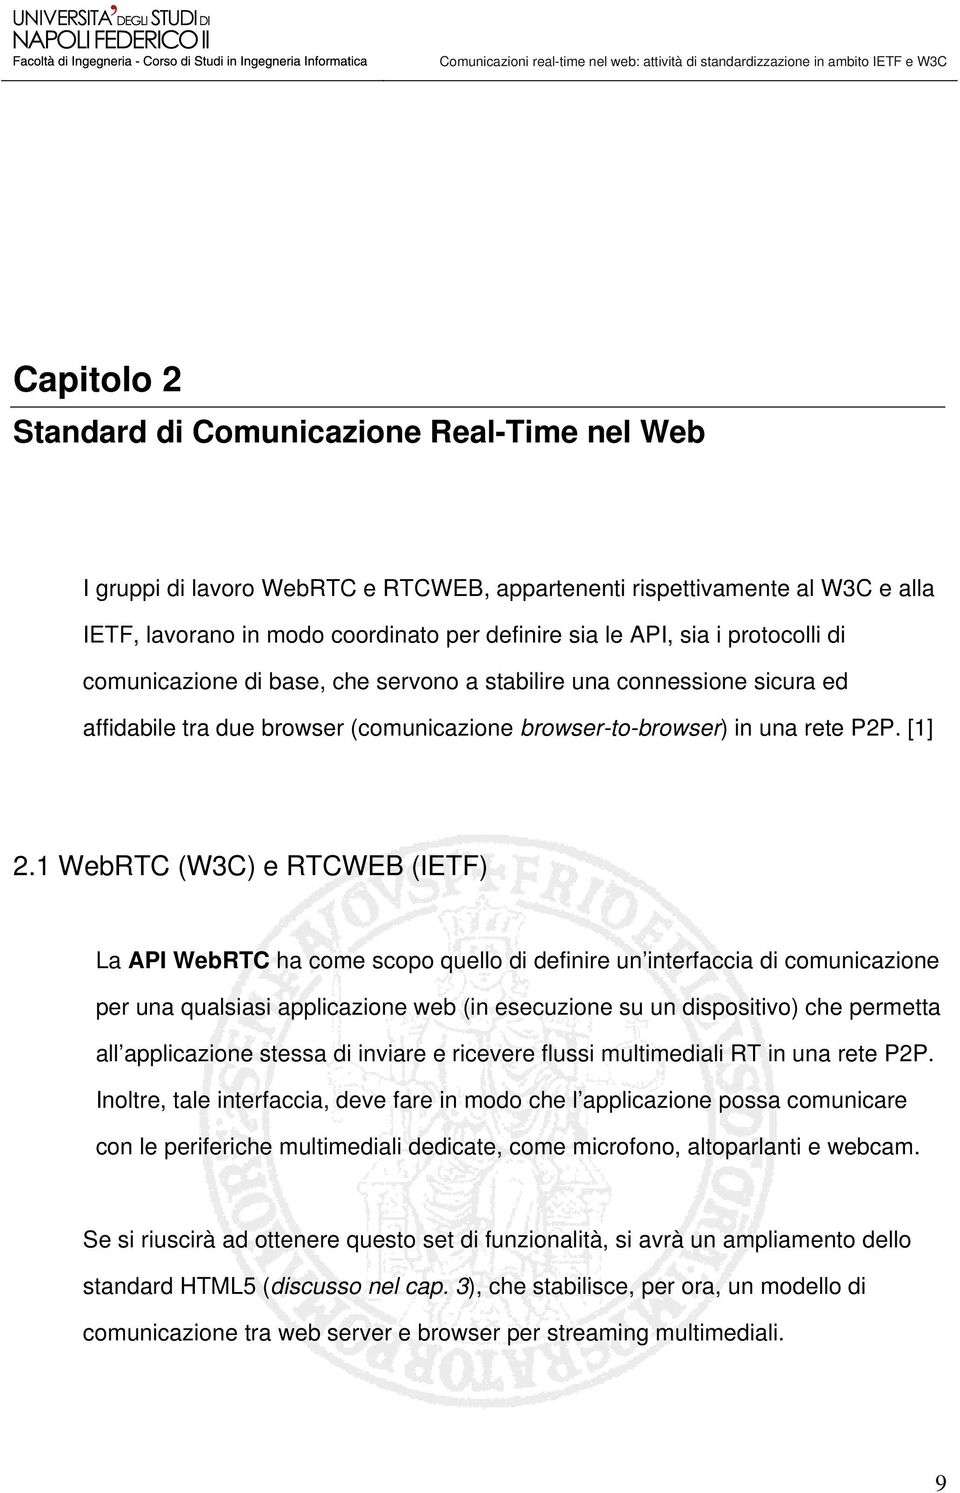 1 WebRTC (W3C) e RTCWEB (IETF) La API WebRTC ha come scopo quello di definire un interfaccia di comunicazione per una qualsiasi applicazione web (in esecuzione su un dispositivo) che permetta all